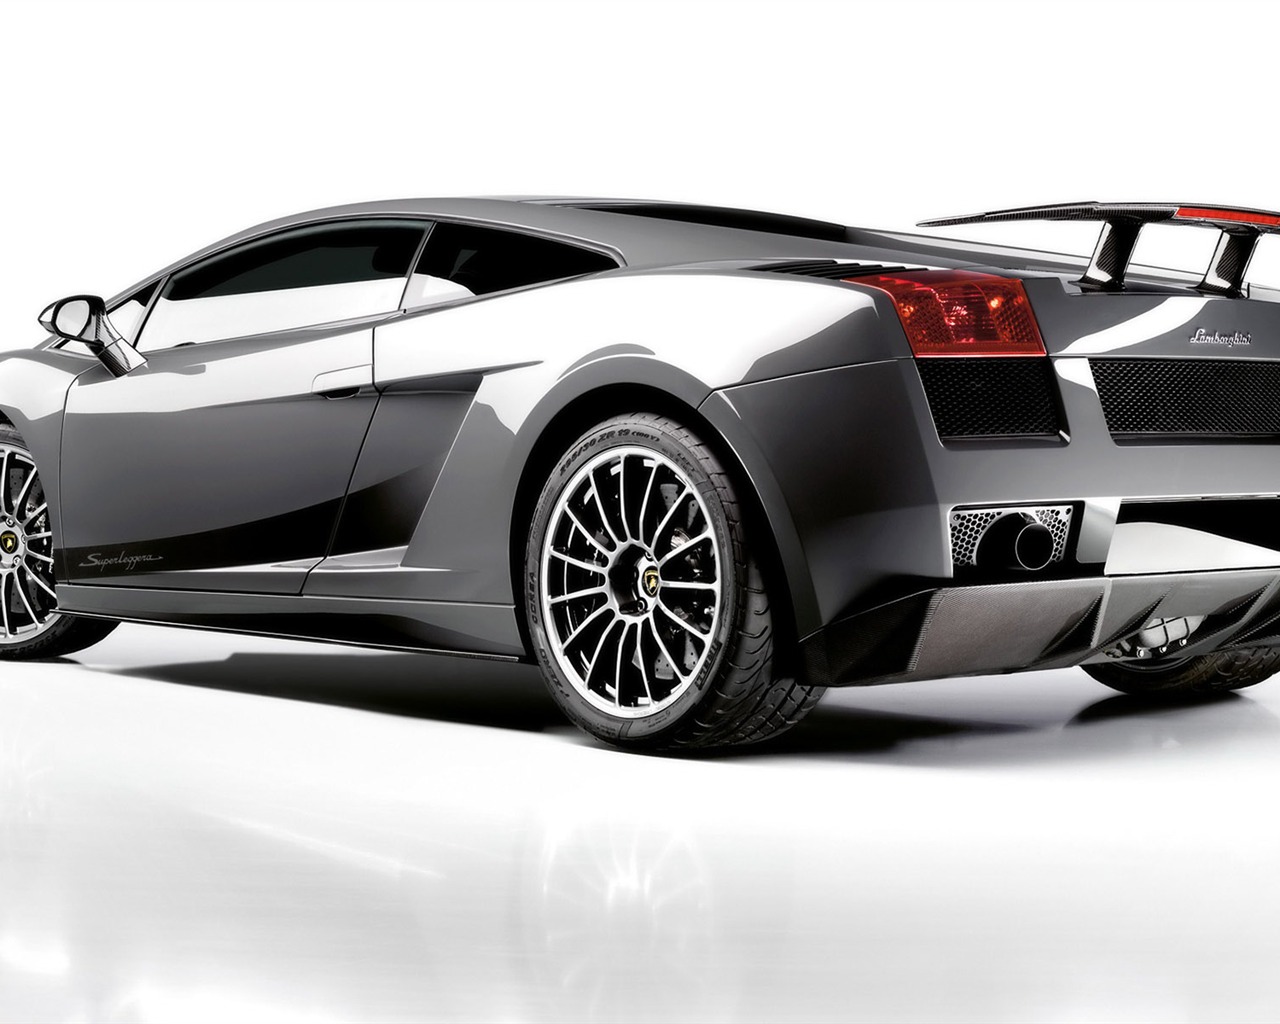 Cool fond d'écran Lamborghini Voiture #7 - 1280x1024